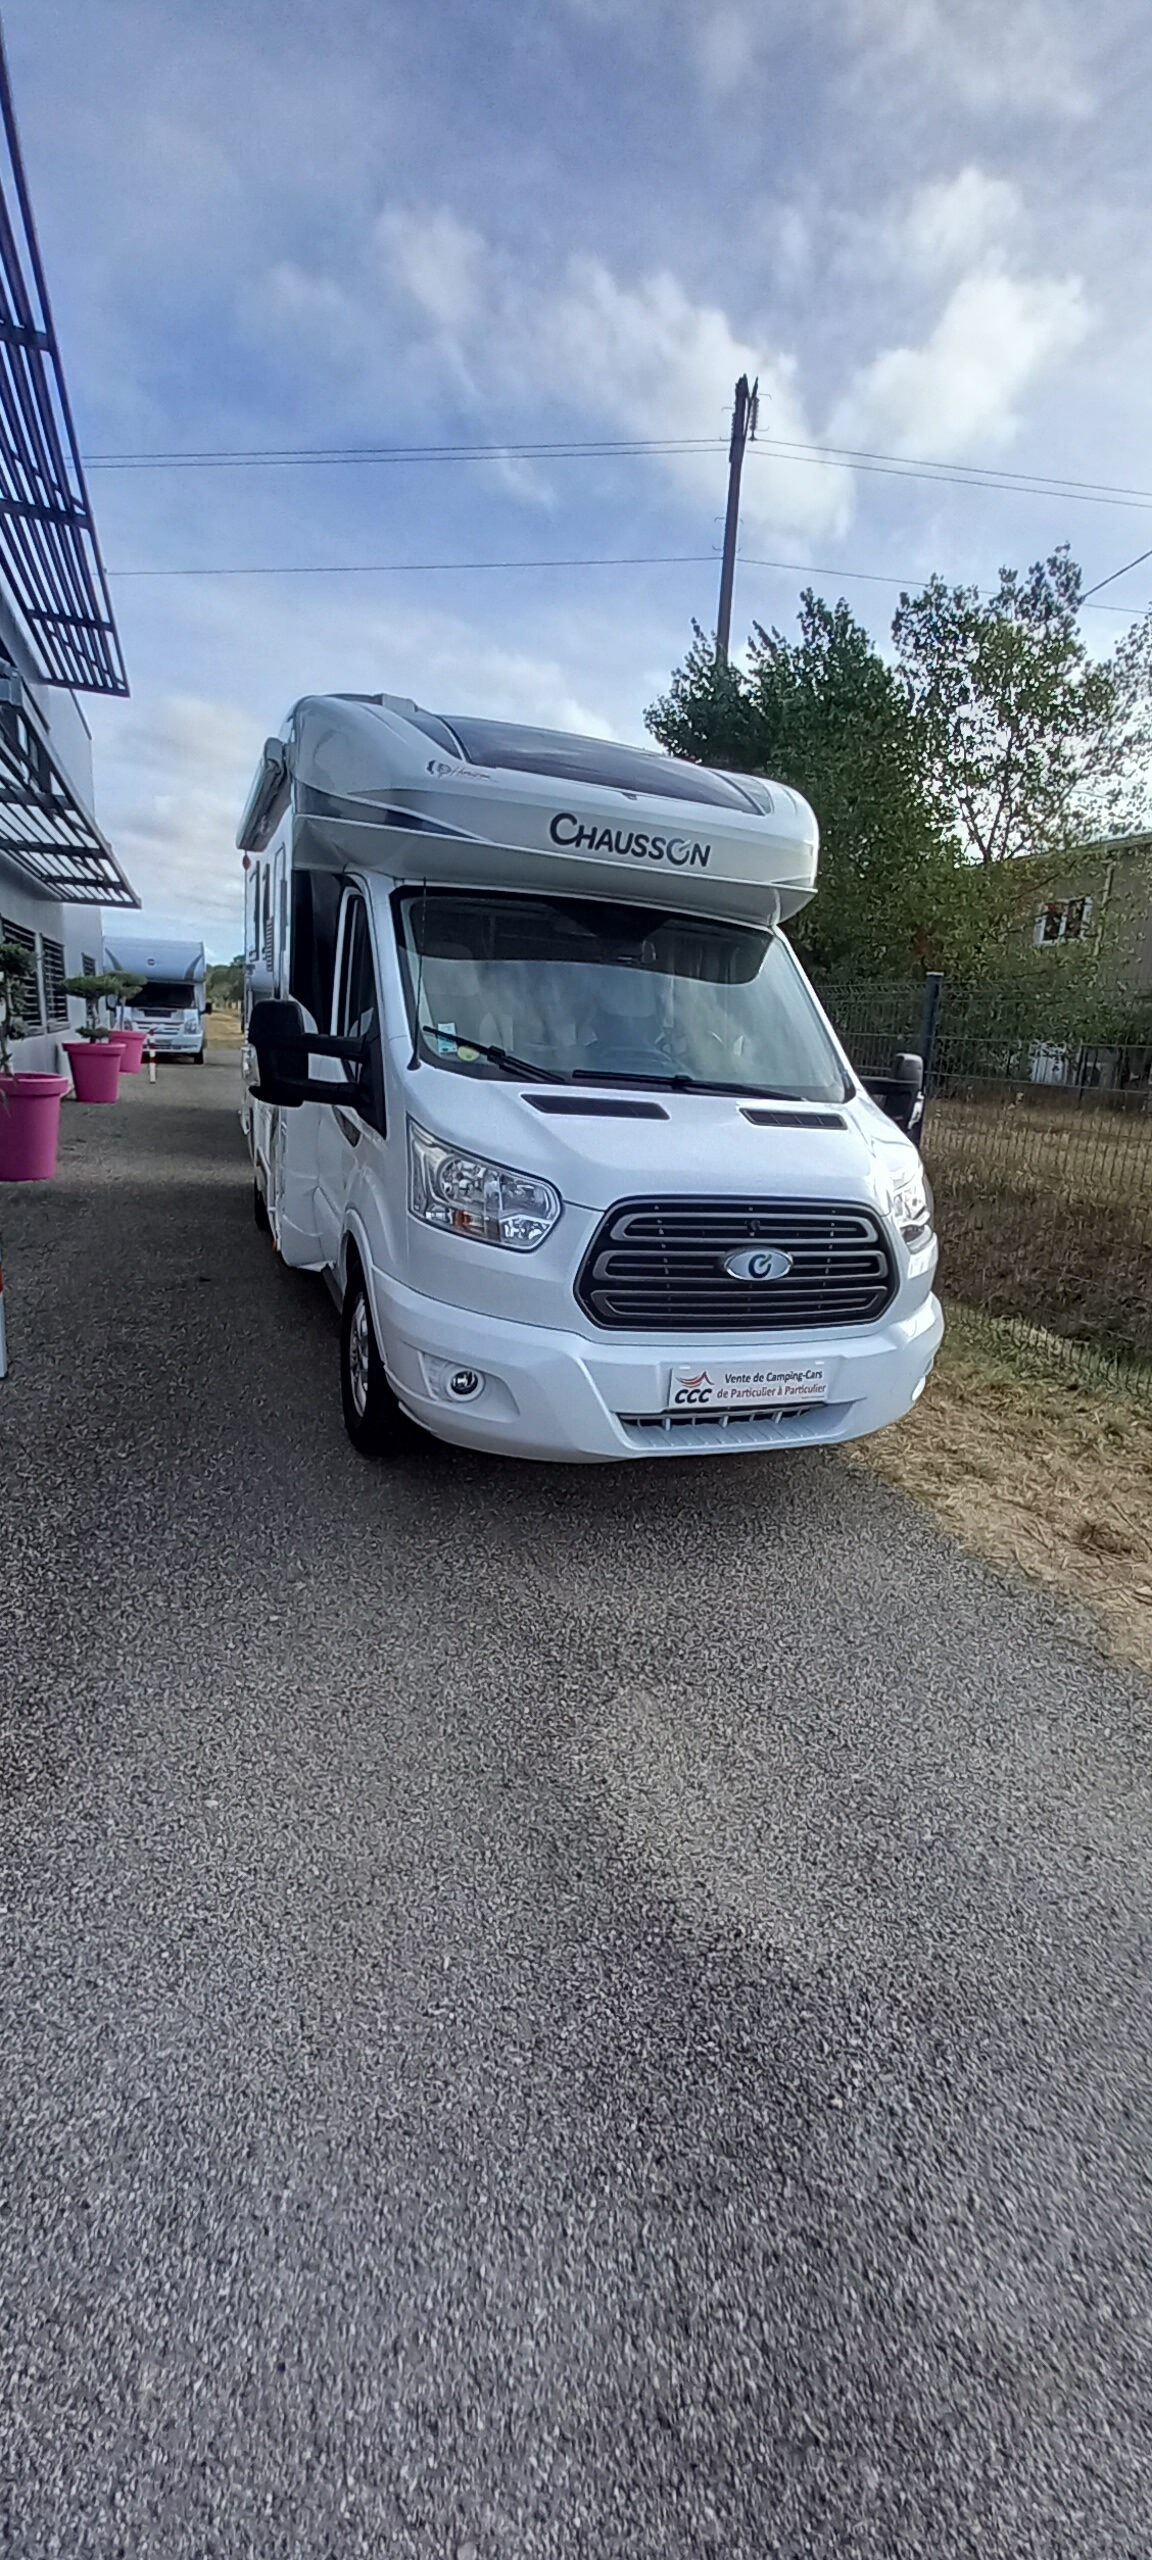 Camping-car Chausson S697 ETAPE LINE 2 500€ D'ACCESSOIRES OFFERTS